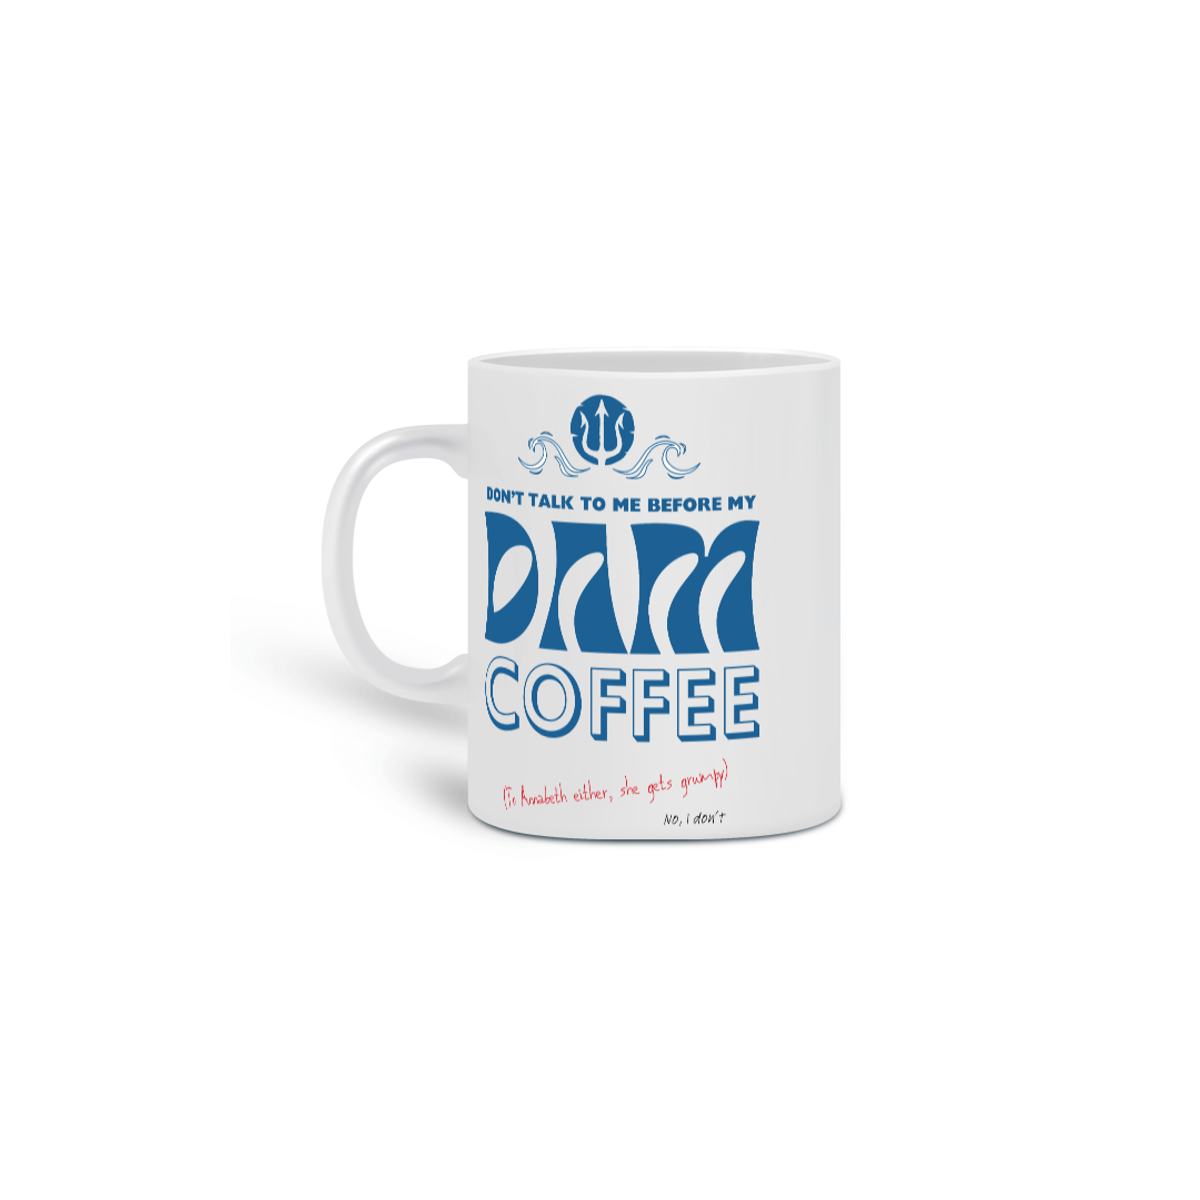 Nome do produto: Dam coffee